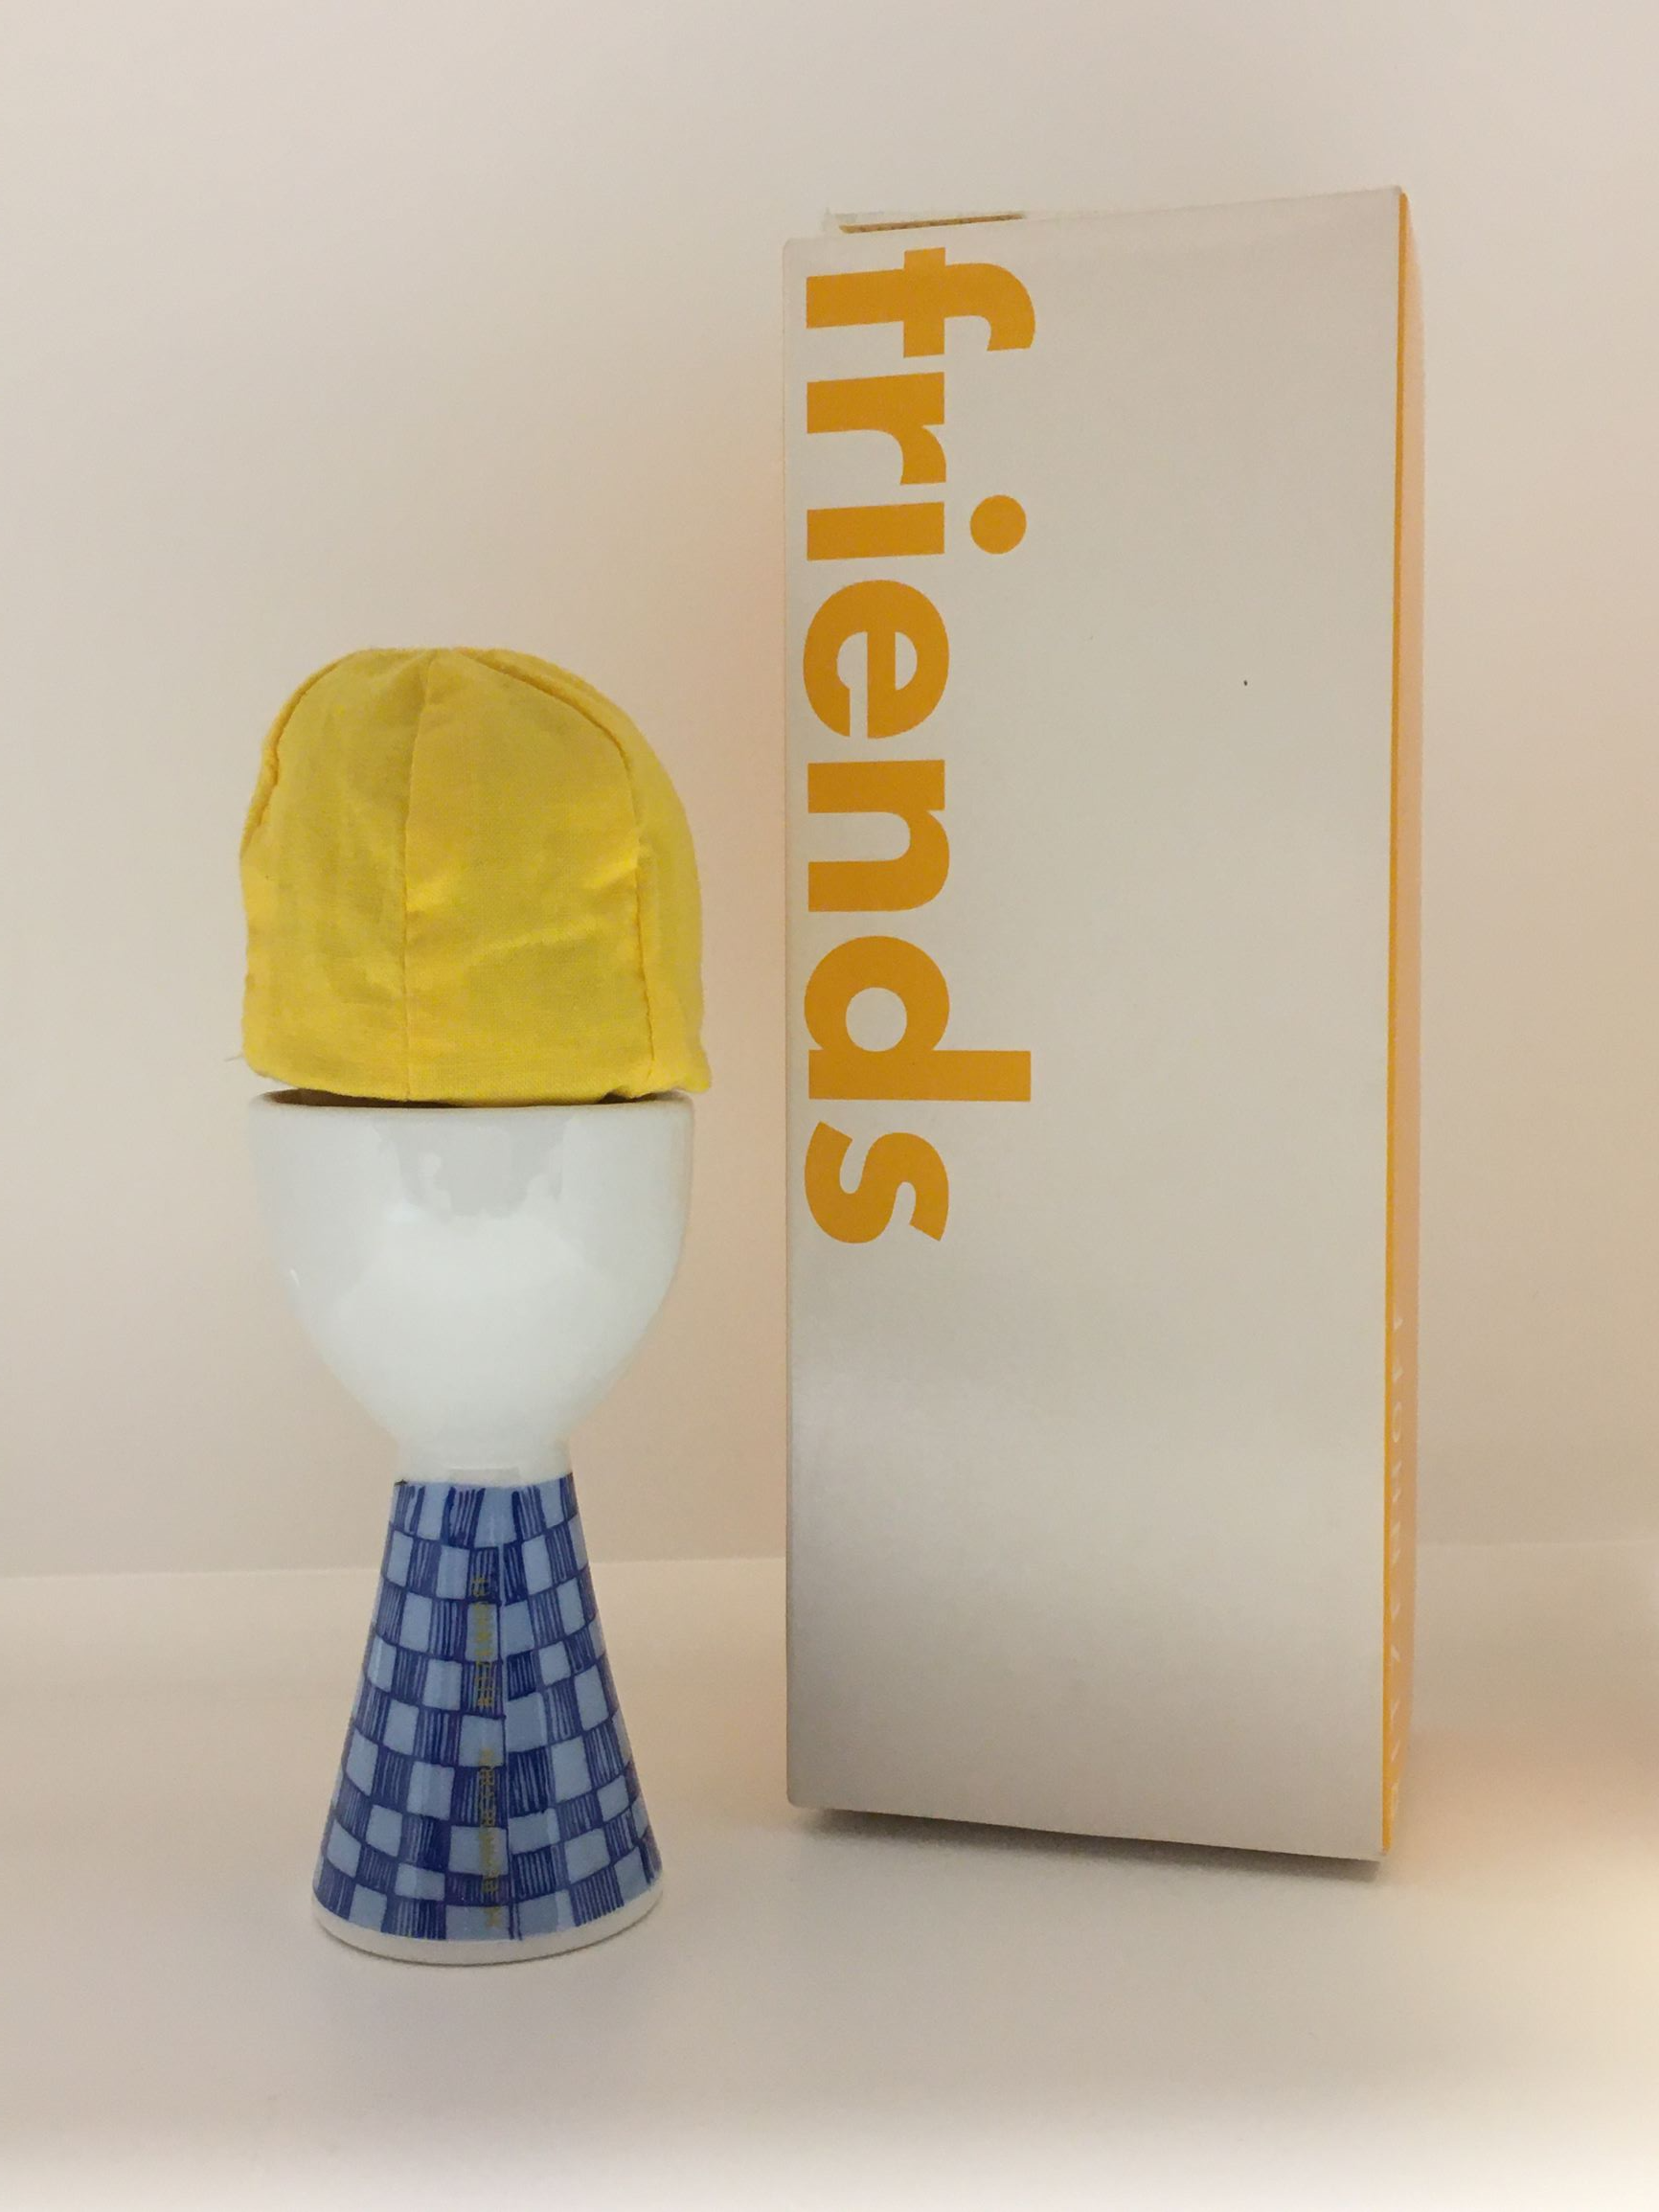 Porta uovo in porcellana con cappello in tessuto, disegnato da Marie Peppercorn nel 2002, Edizione Limitata, della linea "friends" di Ritzenhoff. Dimensioni solo porta uovo: mm 59 x 110 h